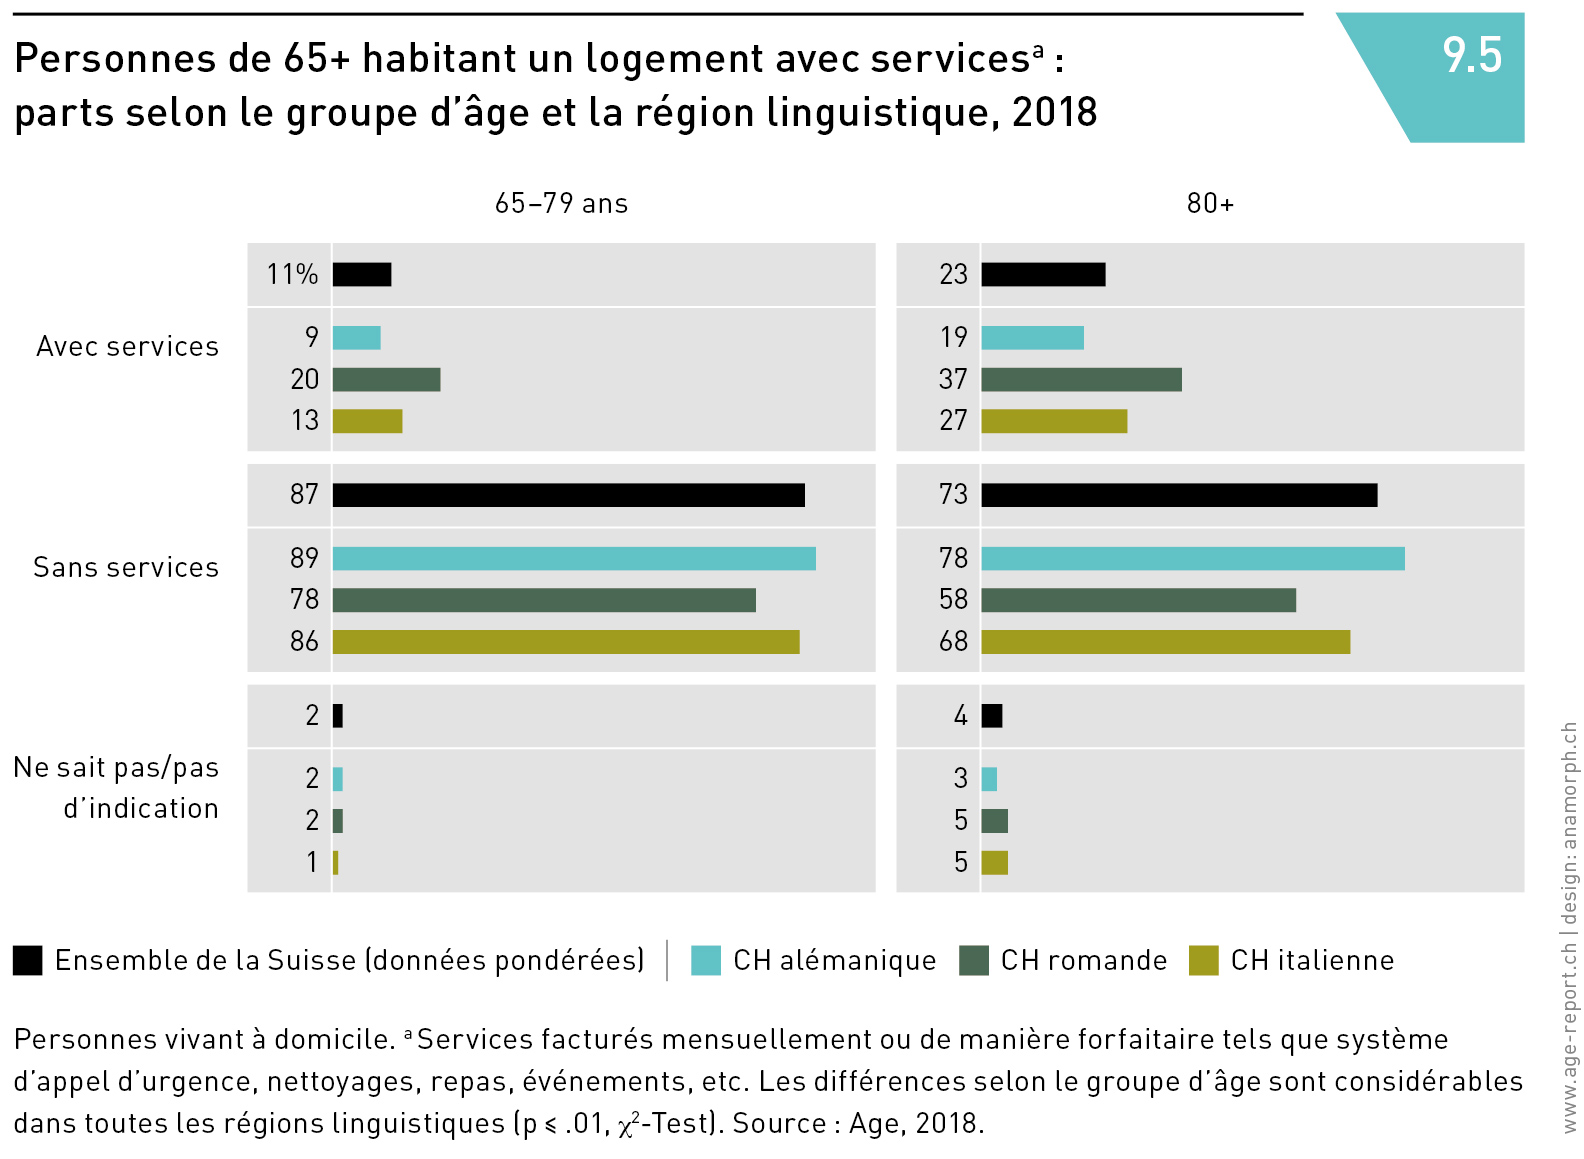 Personnes de 65+ habitant un logement avec services :
parts selon le groupe d’âge et la région linguistique, 2018